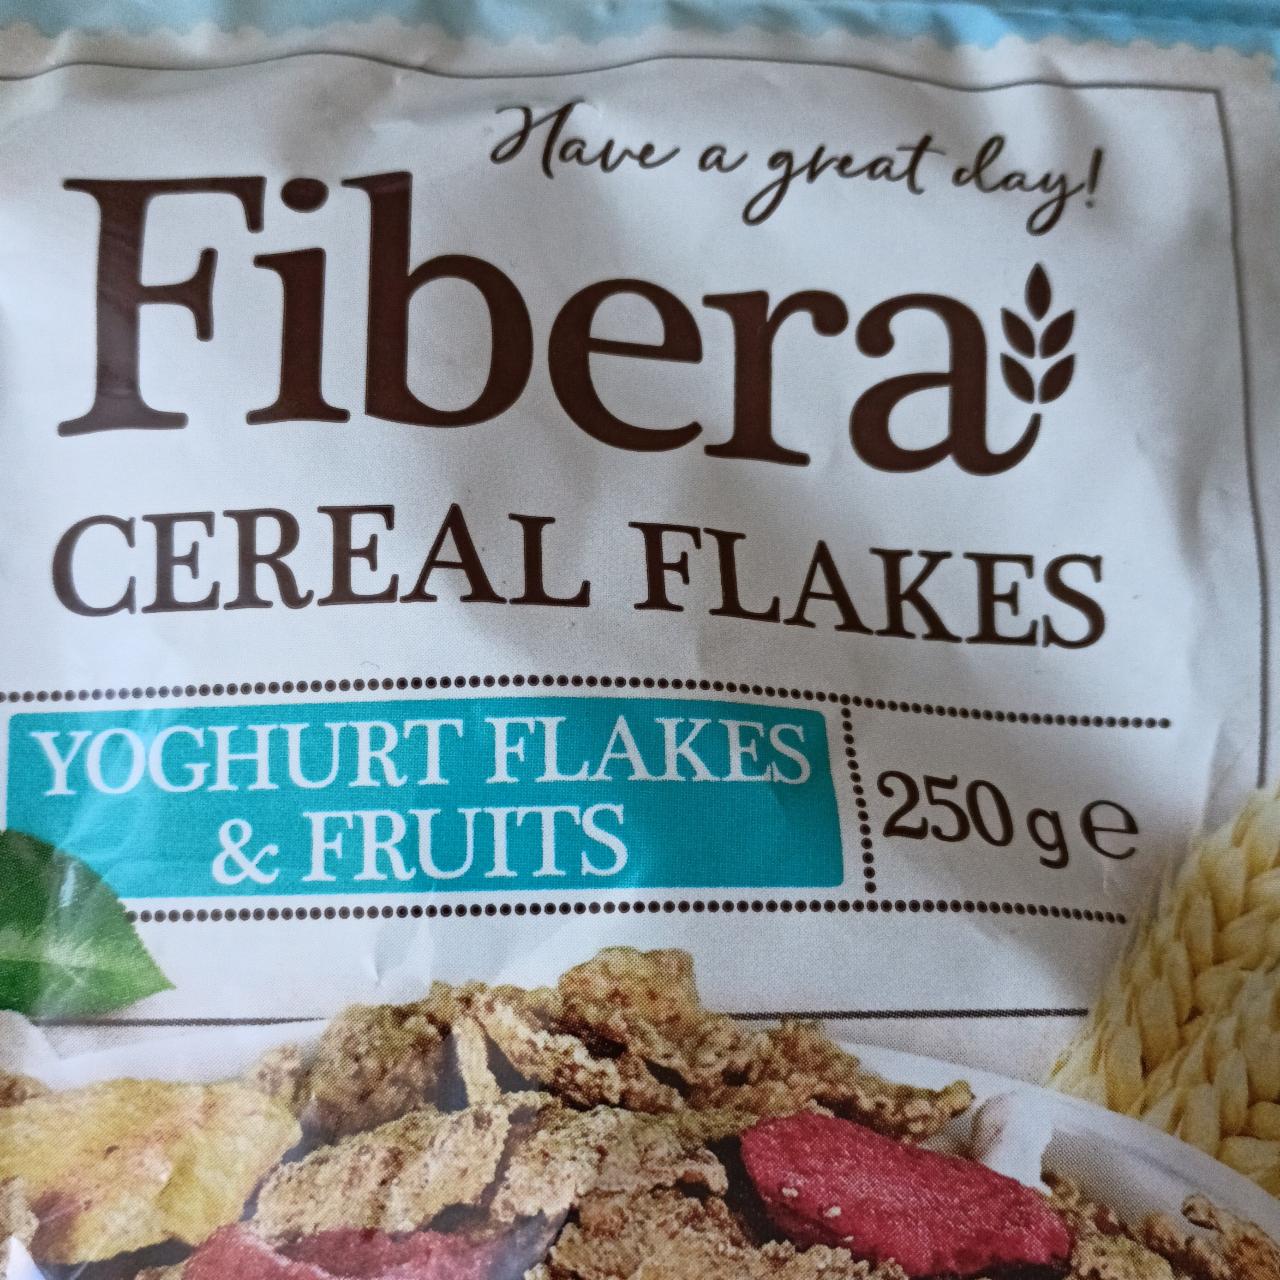 Zdjęcia - Płatki cereal flakes yoghurt & fruits Fibera